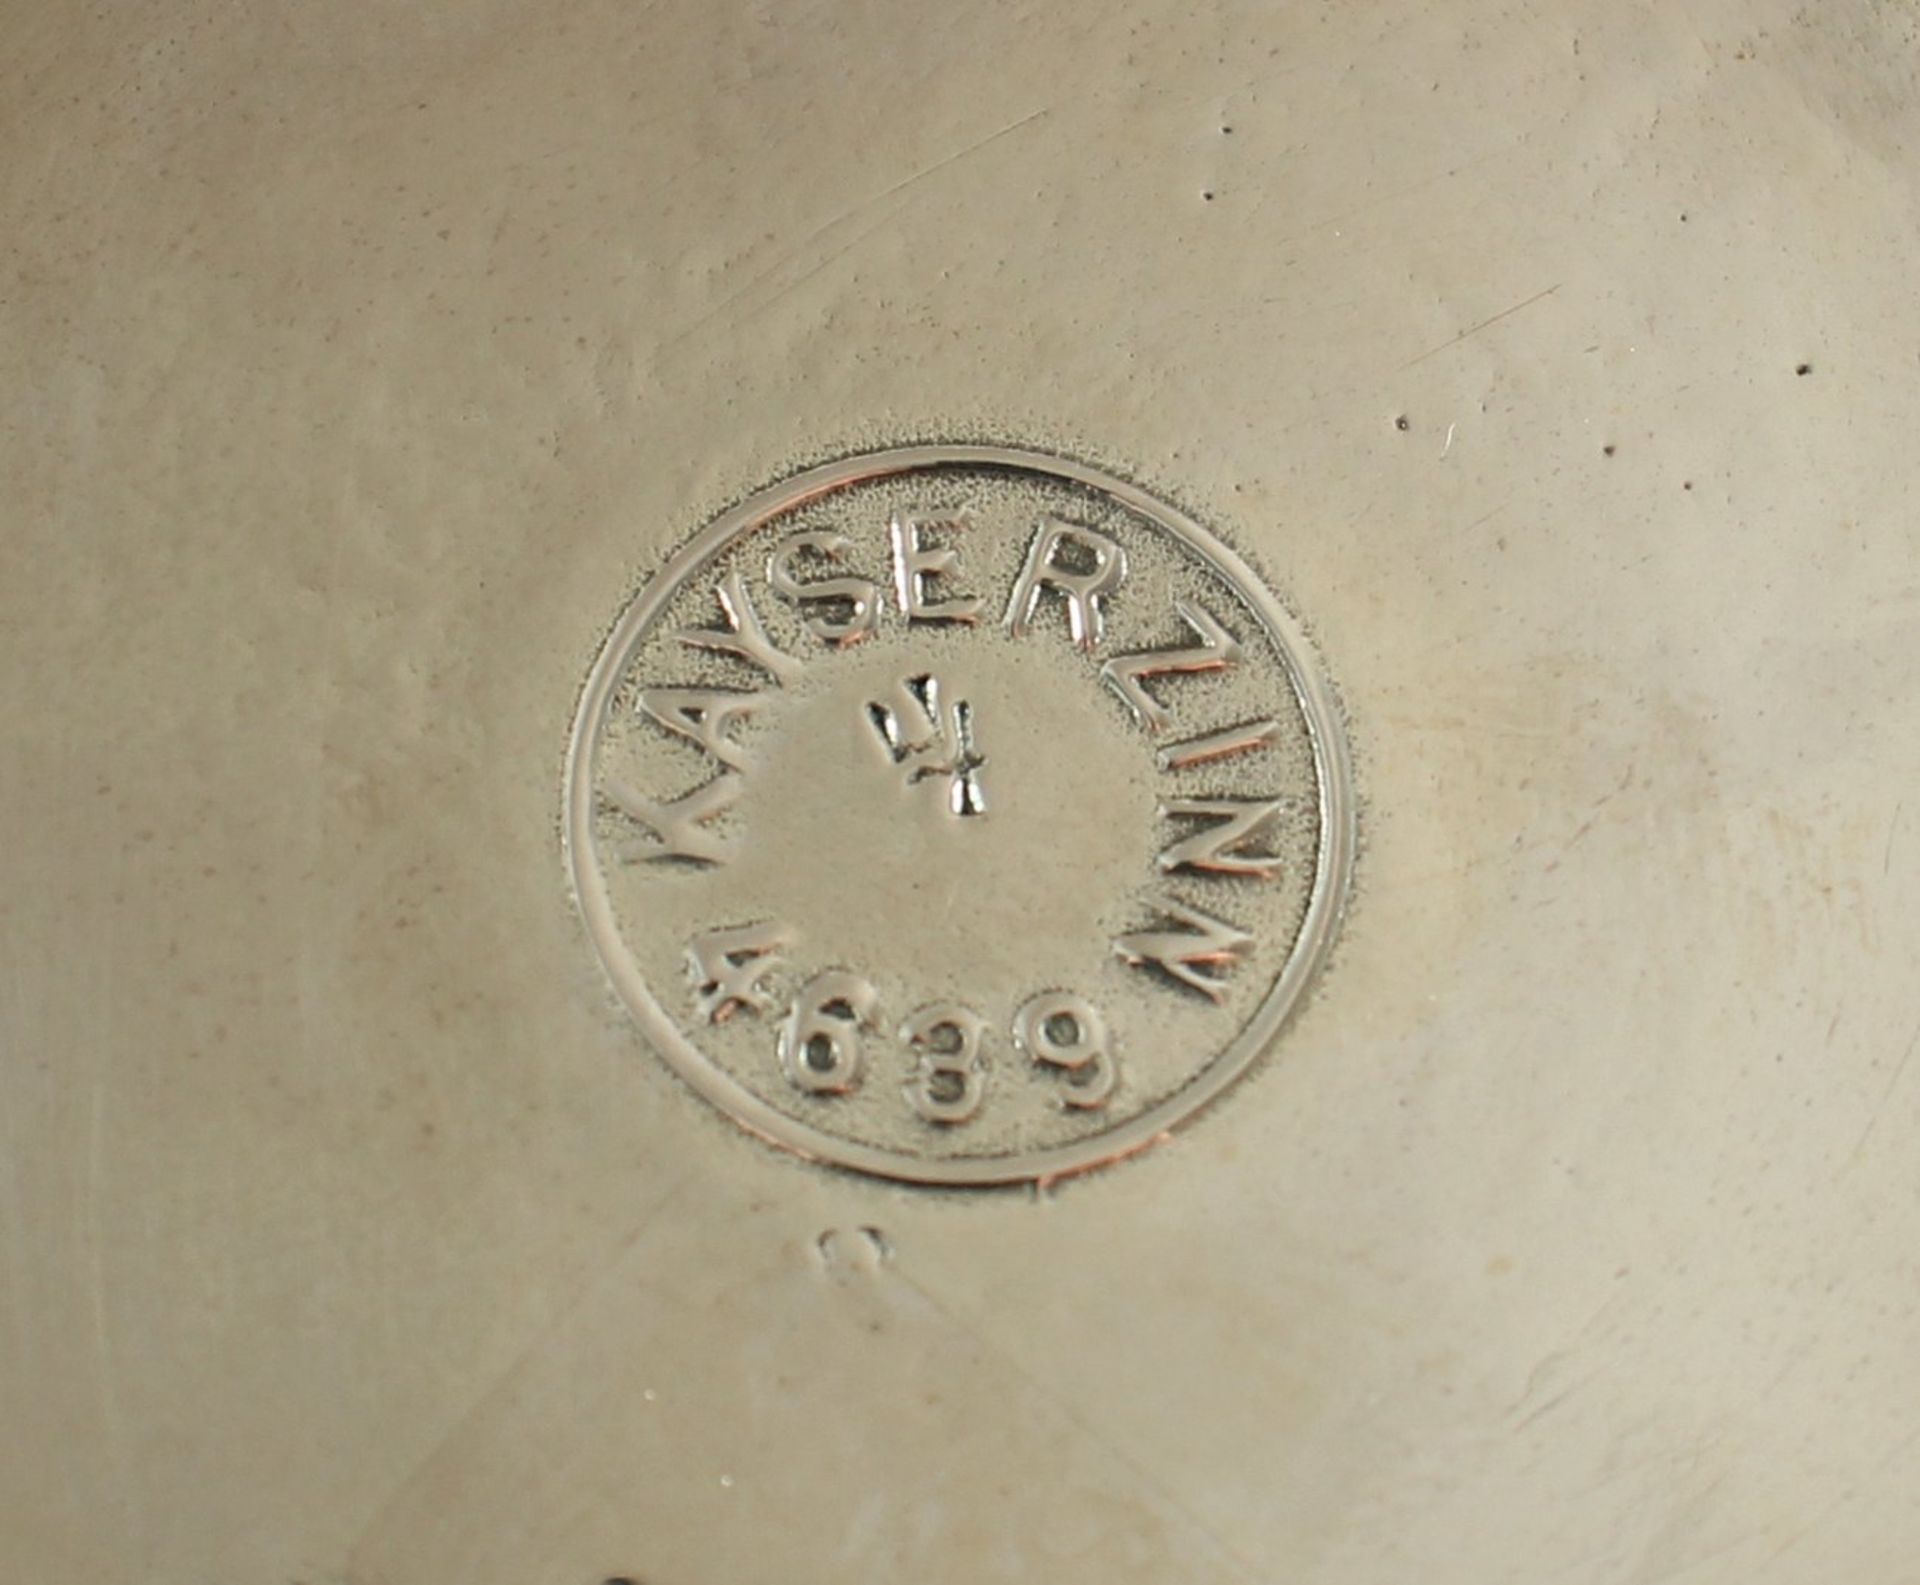 PAAR KEULENVASEN, Metall, versilbert, auf der Wandung reliefiert Pfau, H 31, Modell-Nr. 4639, - Bild 2 aus 2